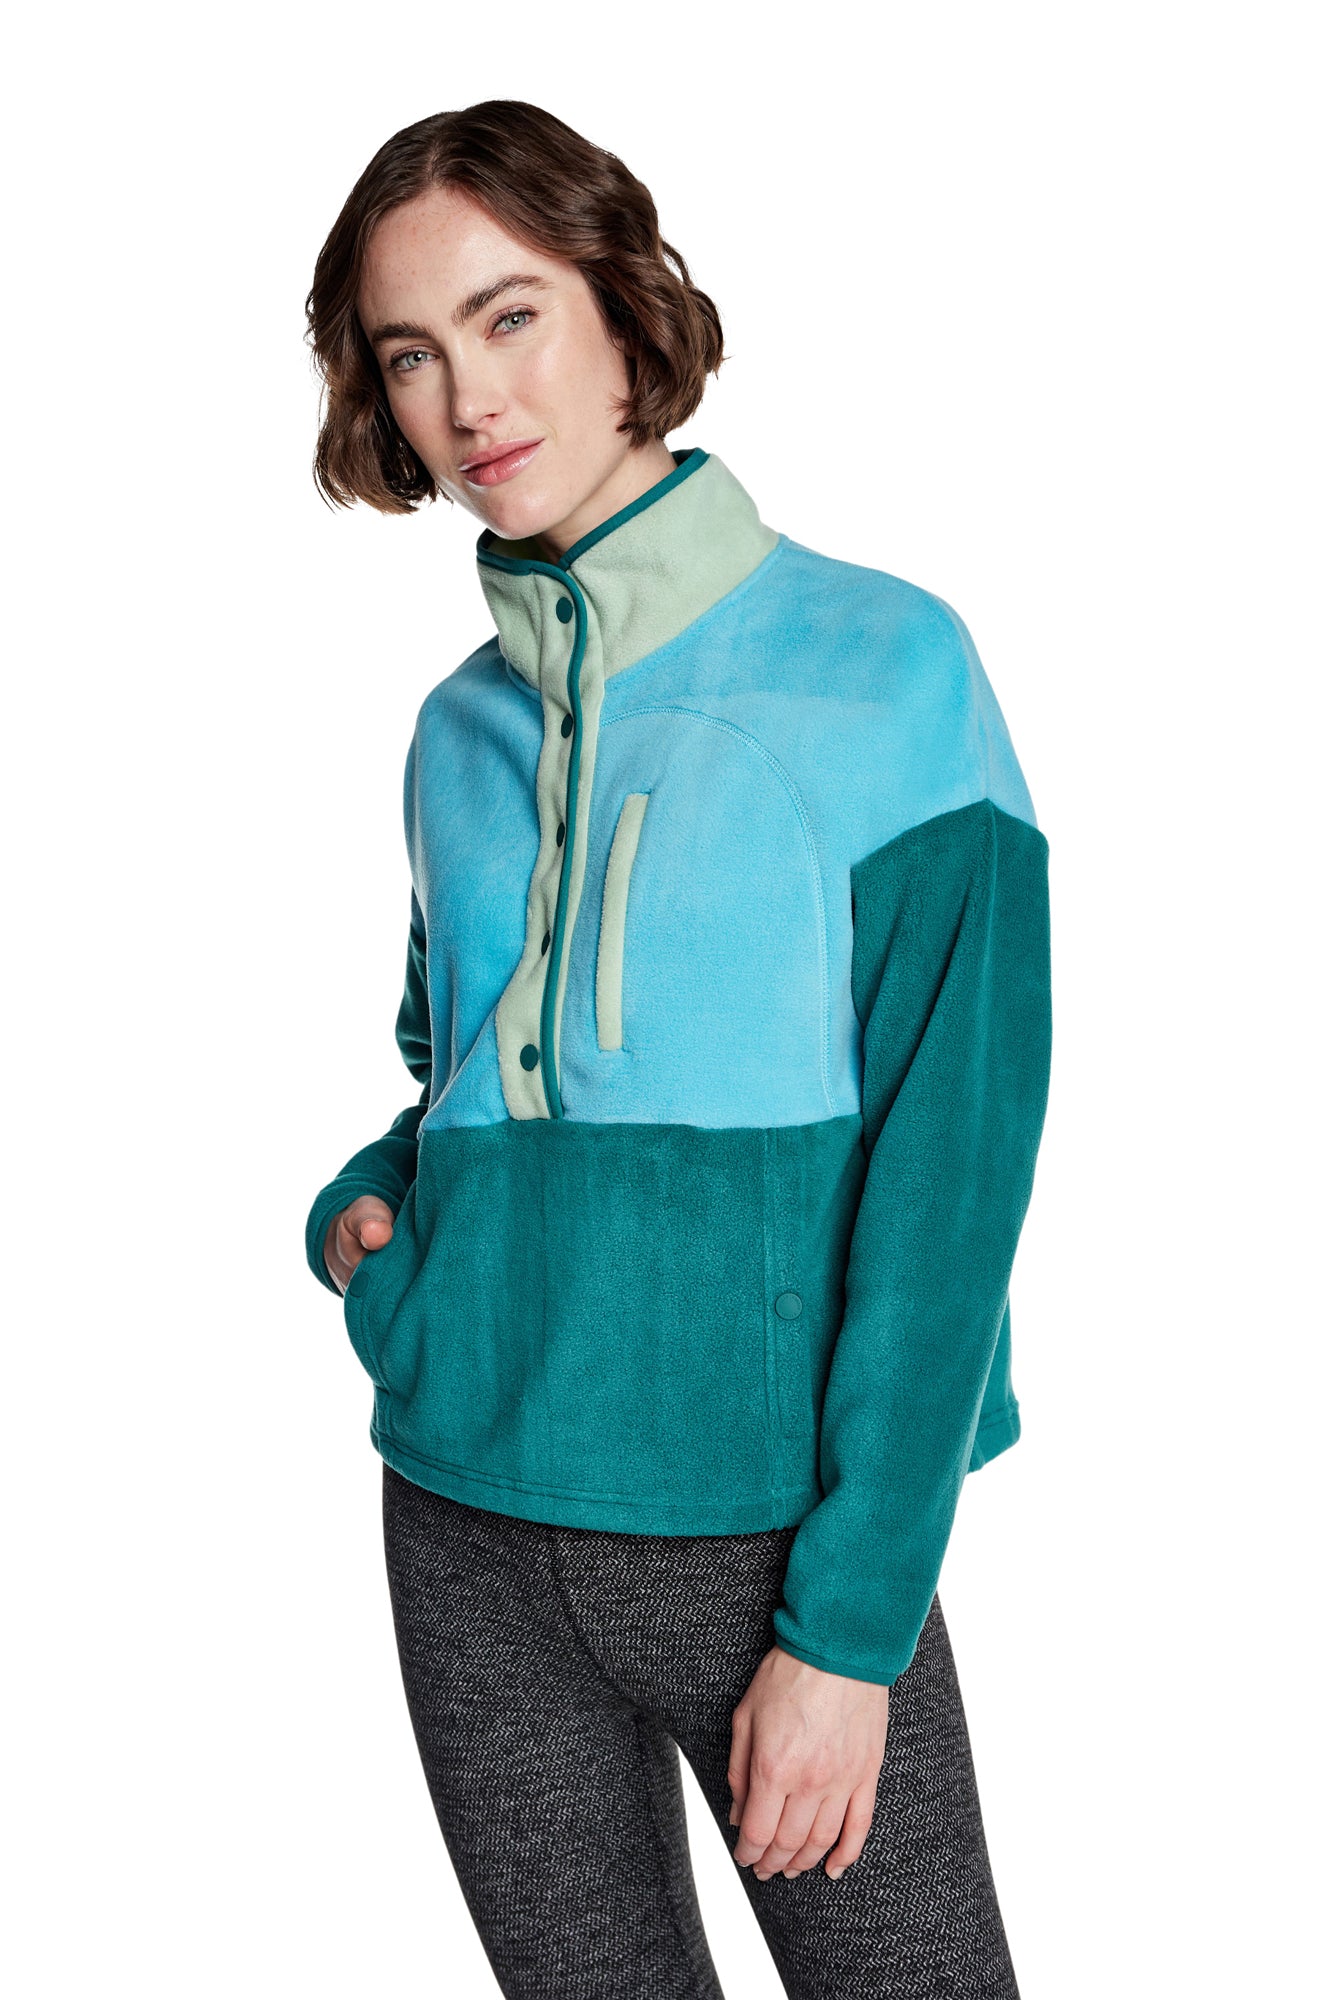 Kyodan Pullover Fleece Jackets for Women